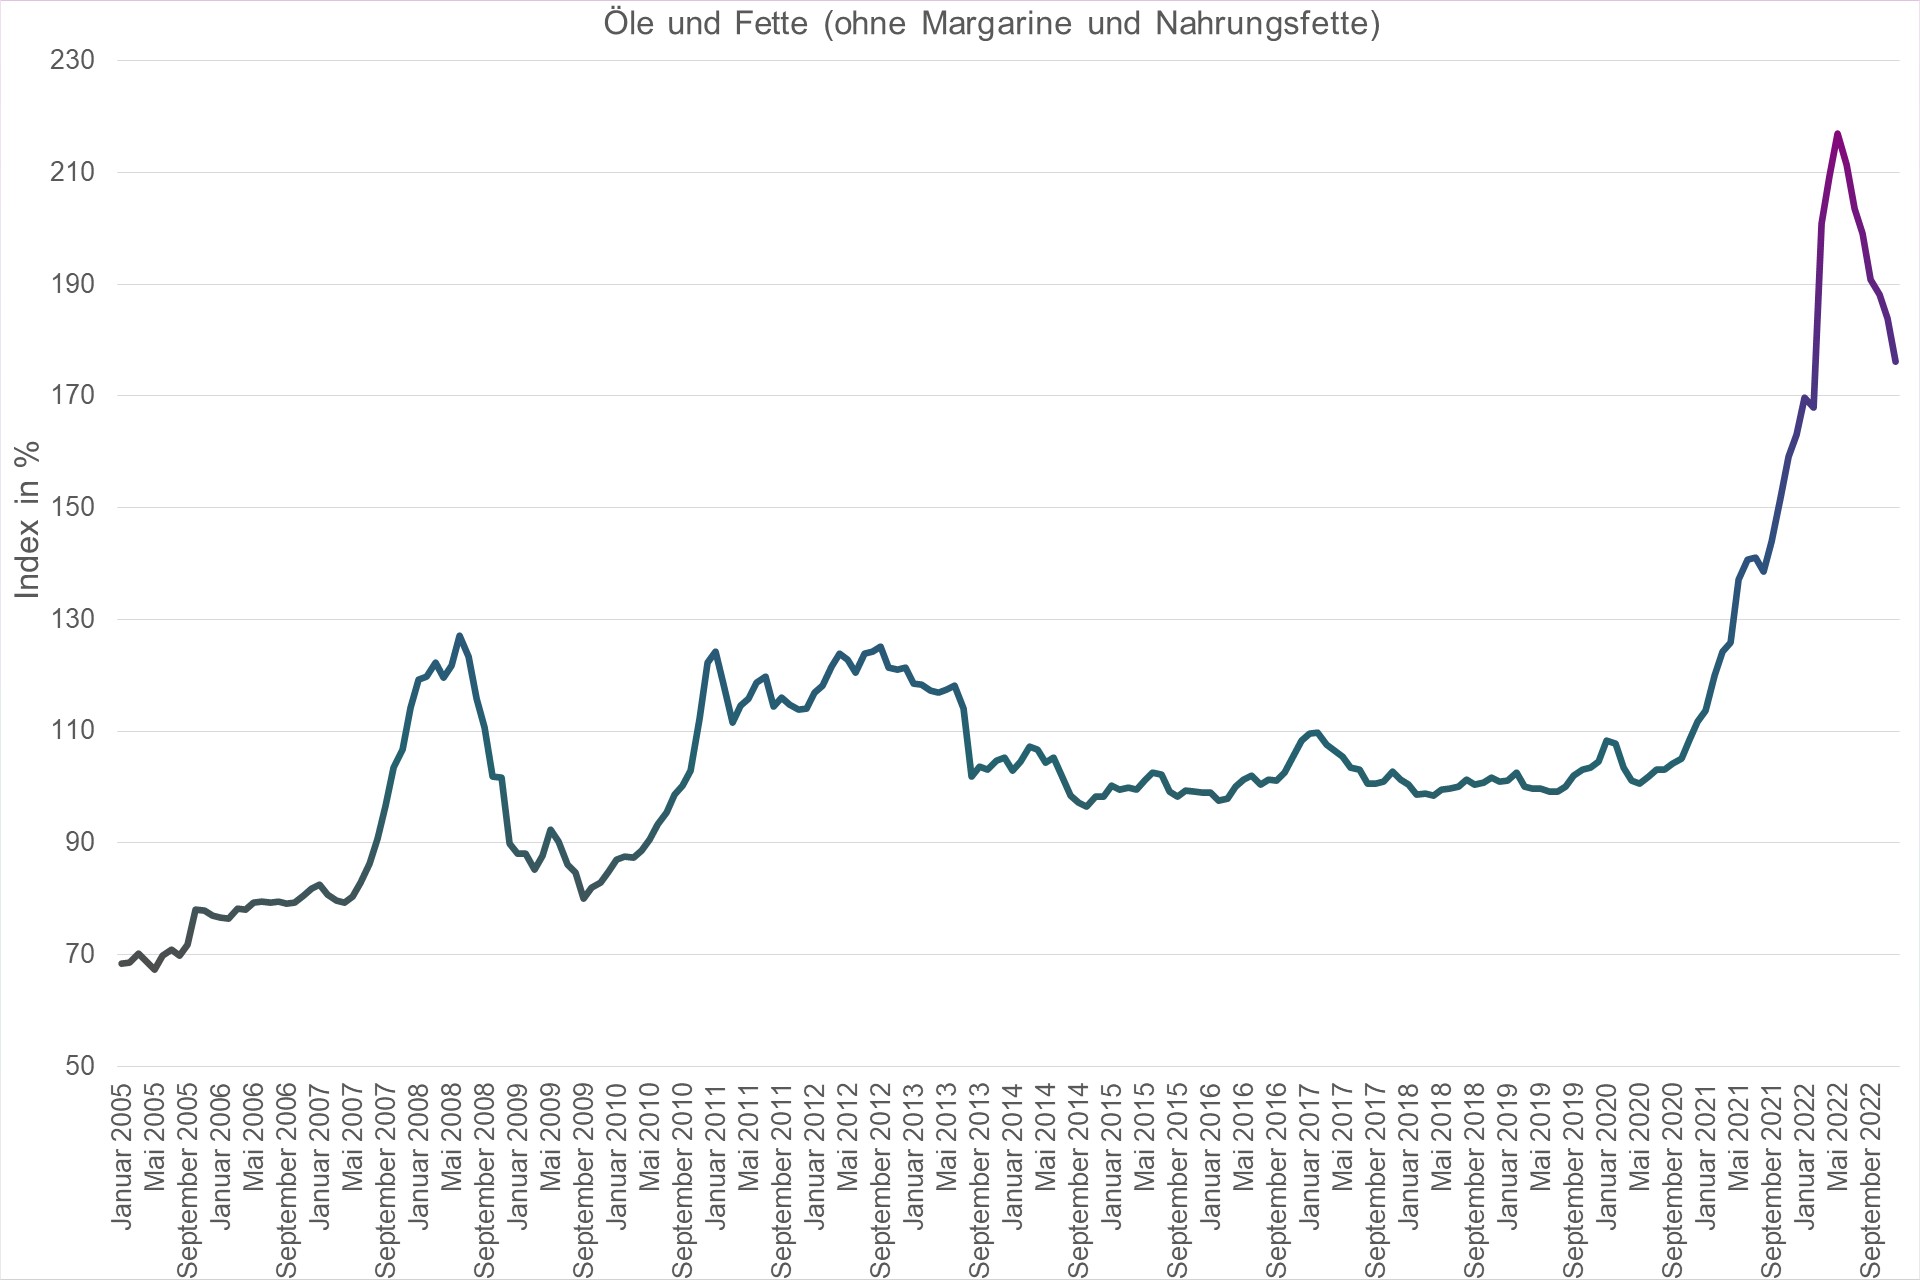 Grafik Preisindex Öle und Fette (ohne Margarine und Nahrungsfette)